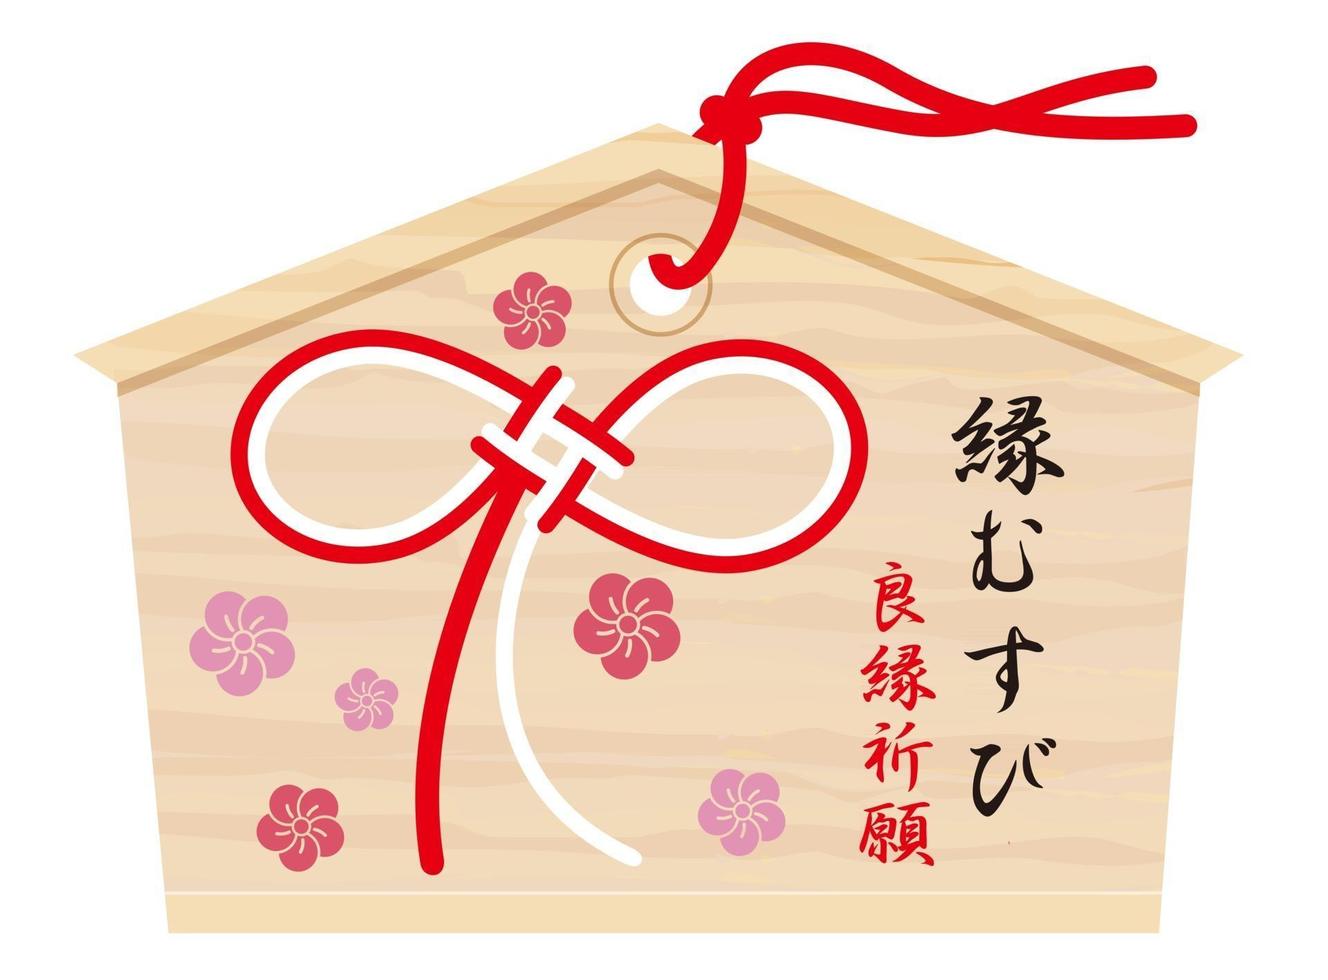 tablet votivo japonês com caligrafia de pincel kanji da sorte melhor, desejando um laço de casamento melhor e uma ilustração simbólica de cordas vintage vetor